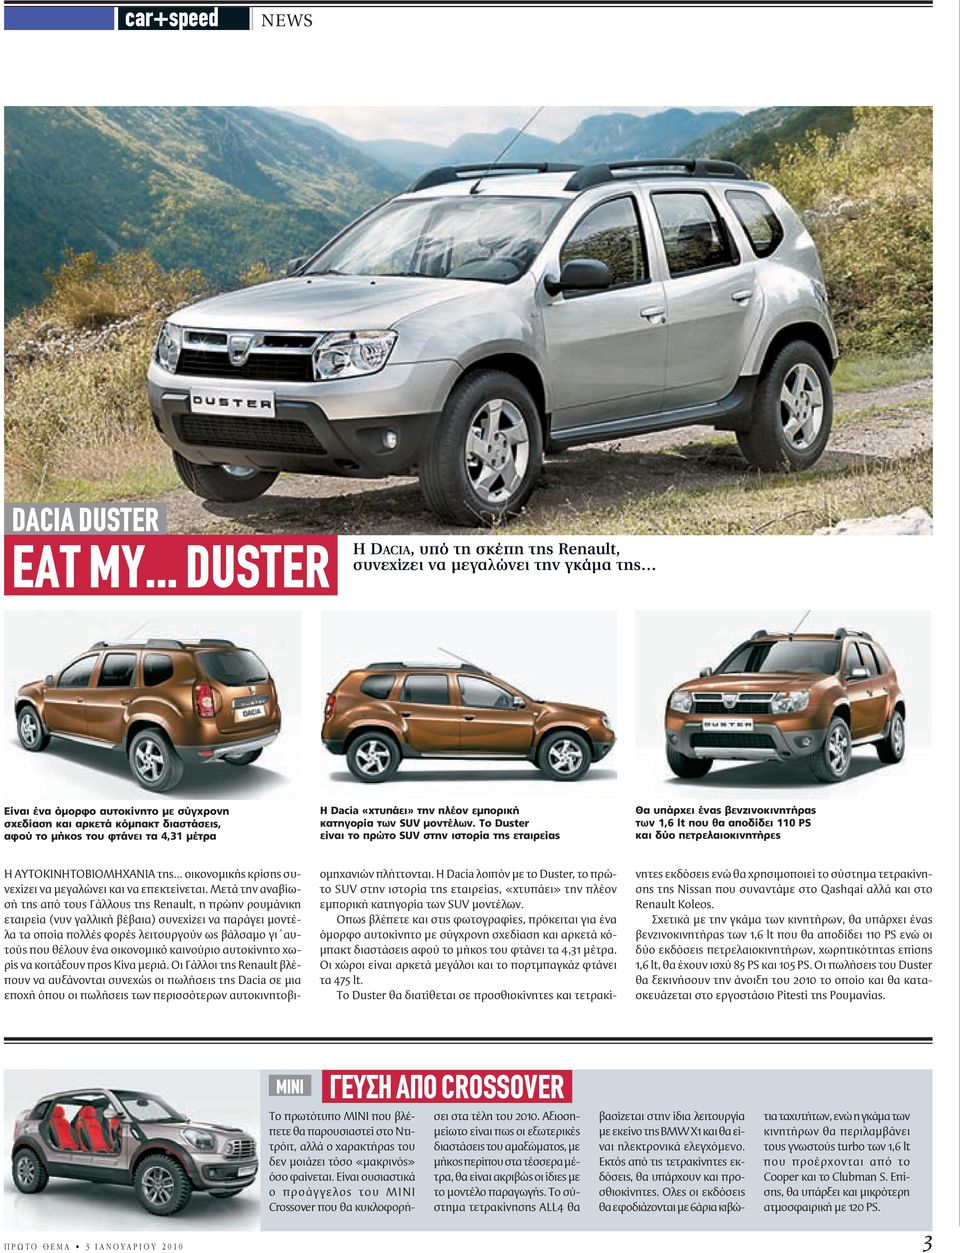 μέτρα H Dacia «χτυπάει» την πλέον εμπορική κατηγορία των SUV μοντέλων.